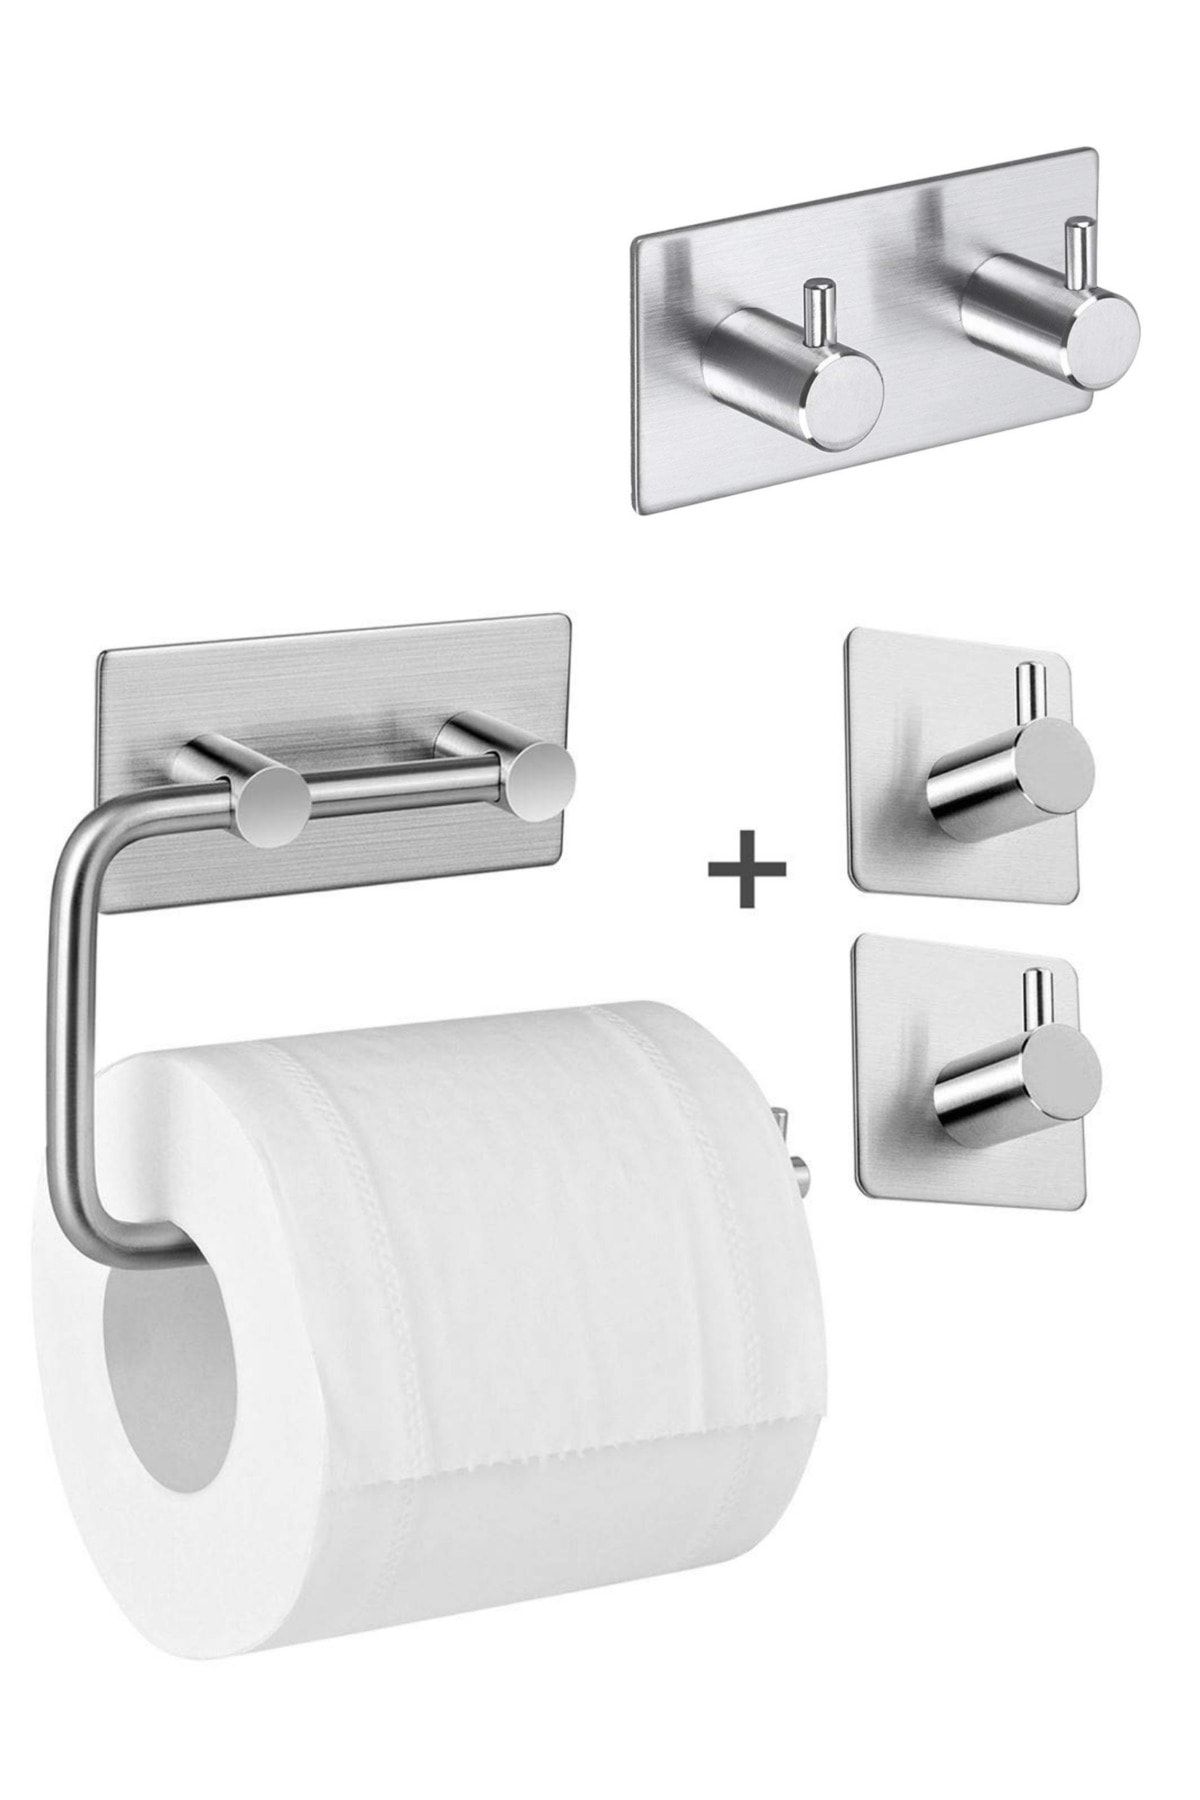 DELTAHOME Paslanmaz Çelik Yapışkanlı Tuvalet Kağıtlığı -bornozluk - 2 Adet Havluluk - Anında Montaj